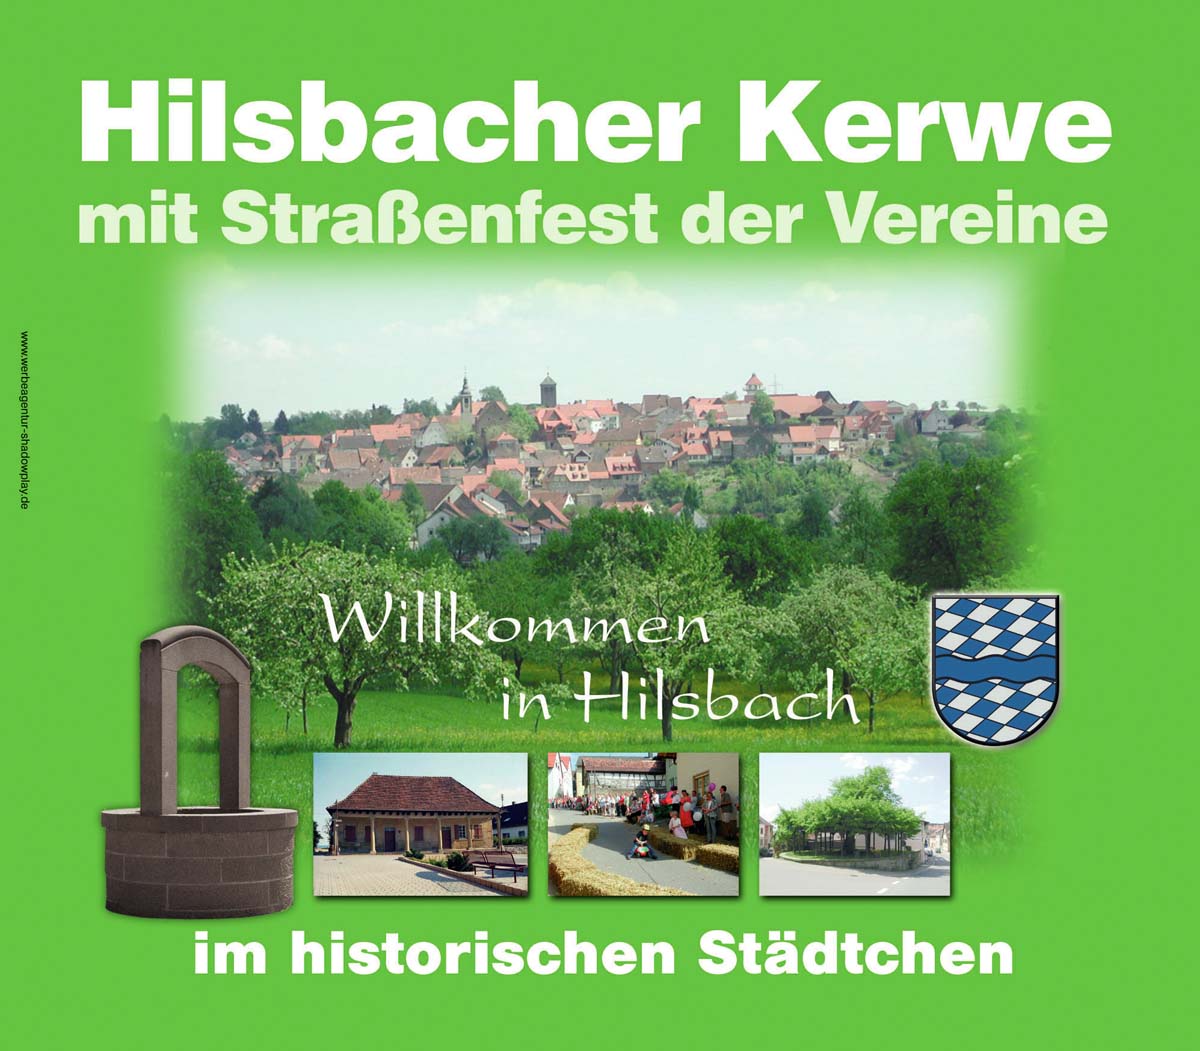 Unterhaltung und Ausstellungen – Hilsbacher Kerwe